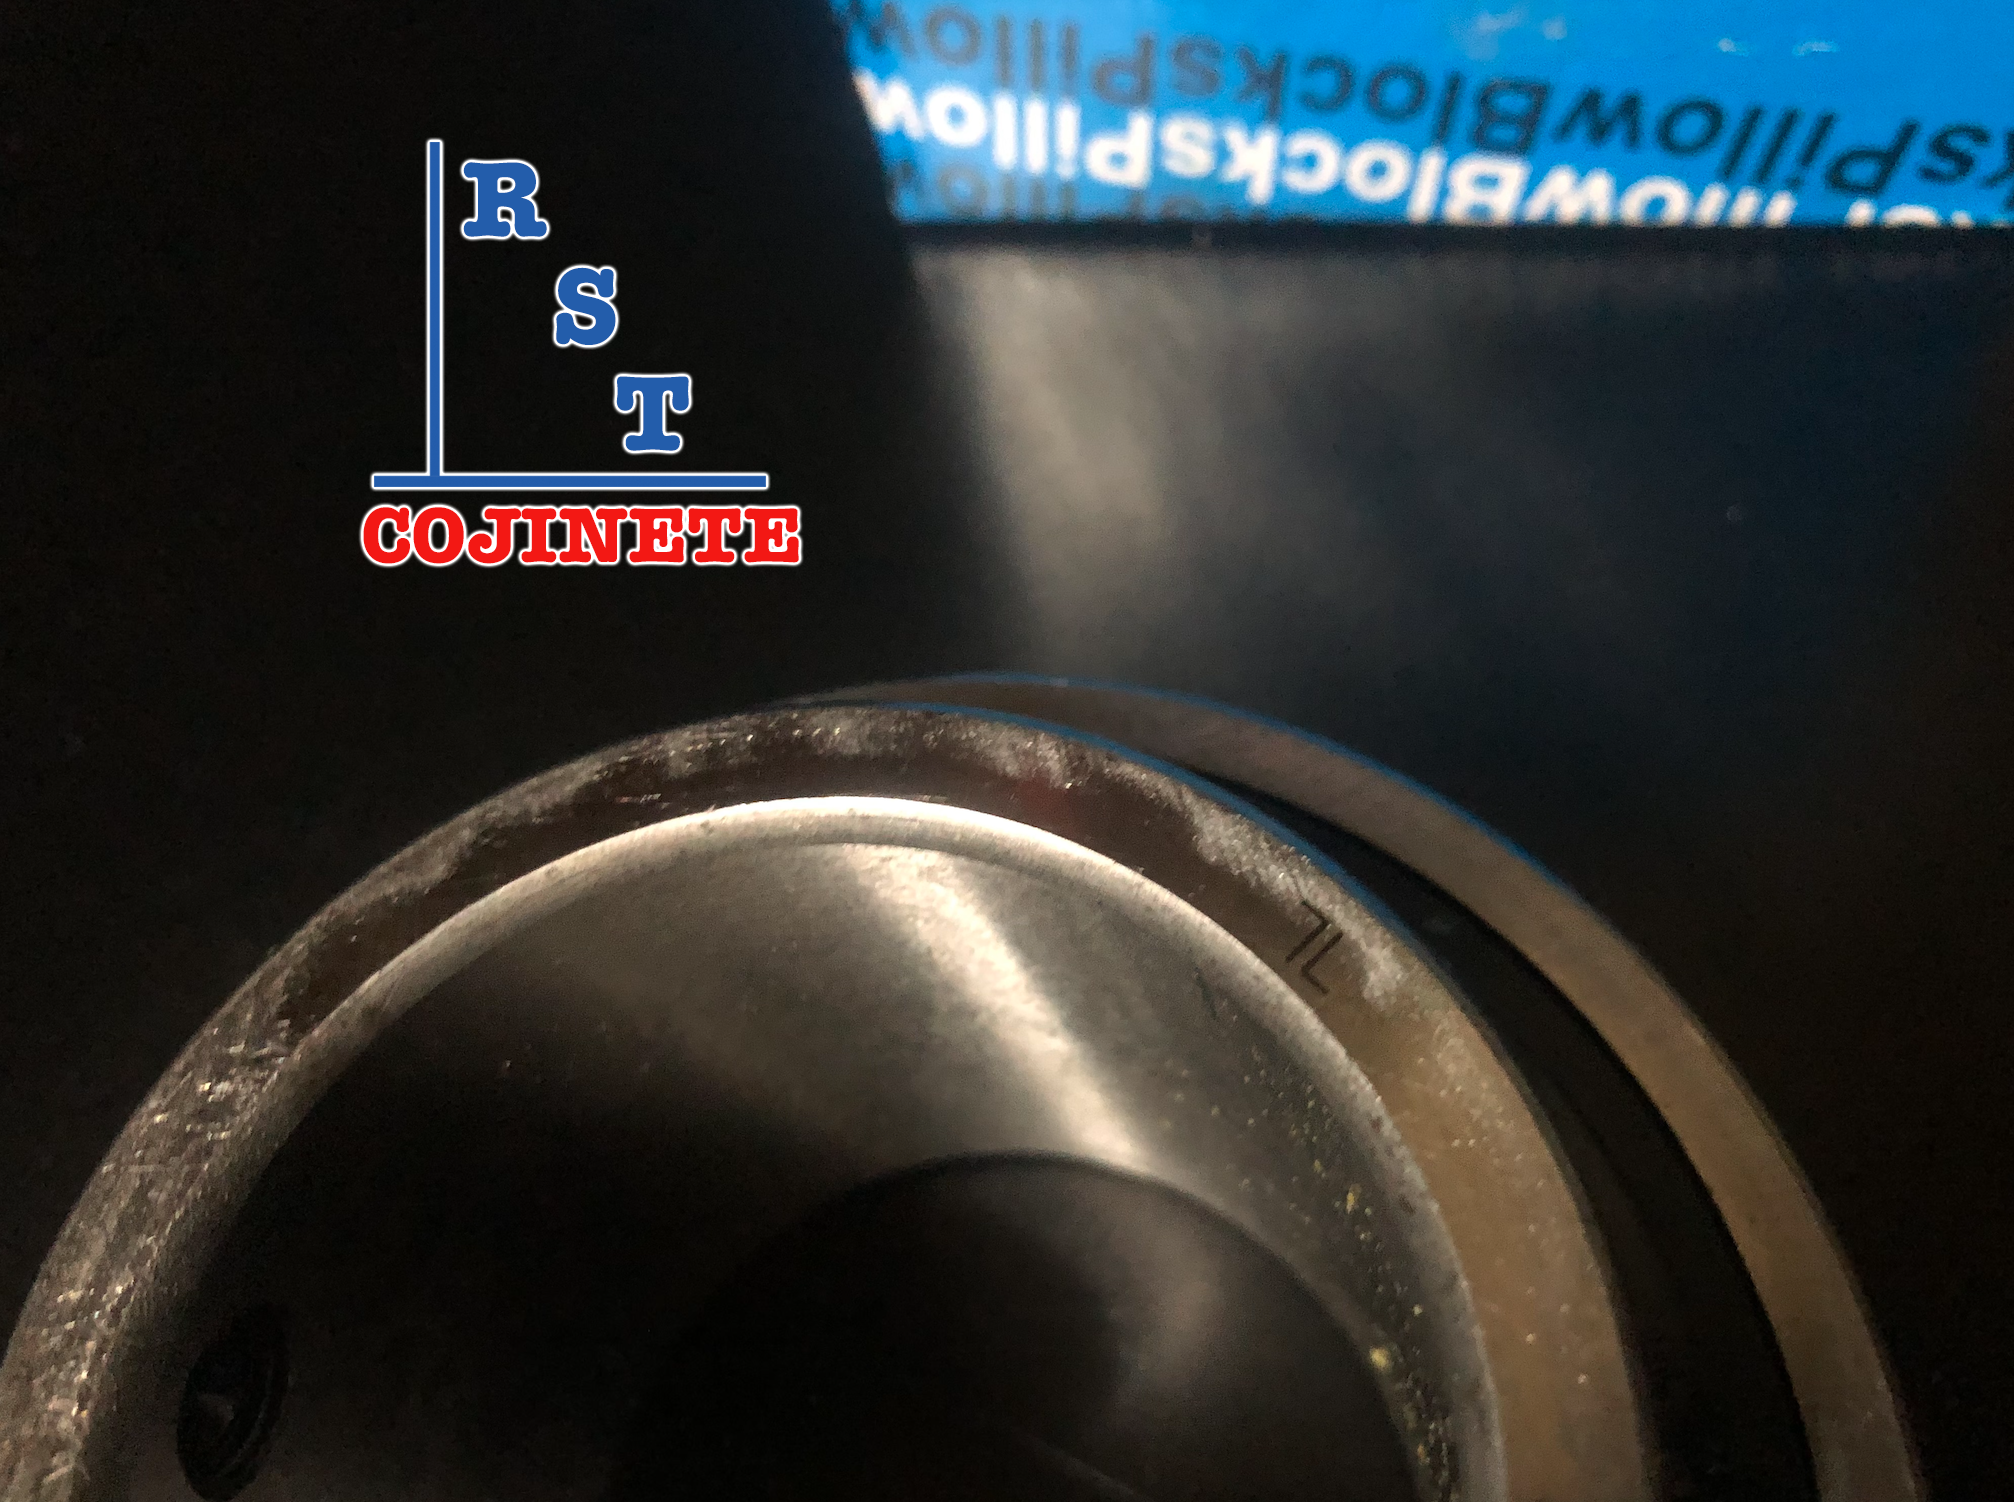 Cojinete insertable UC207-20 | Rodamiento para eje de 1-¼" rígido de bolas con sello de hule para chumacera